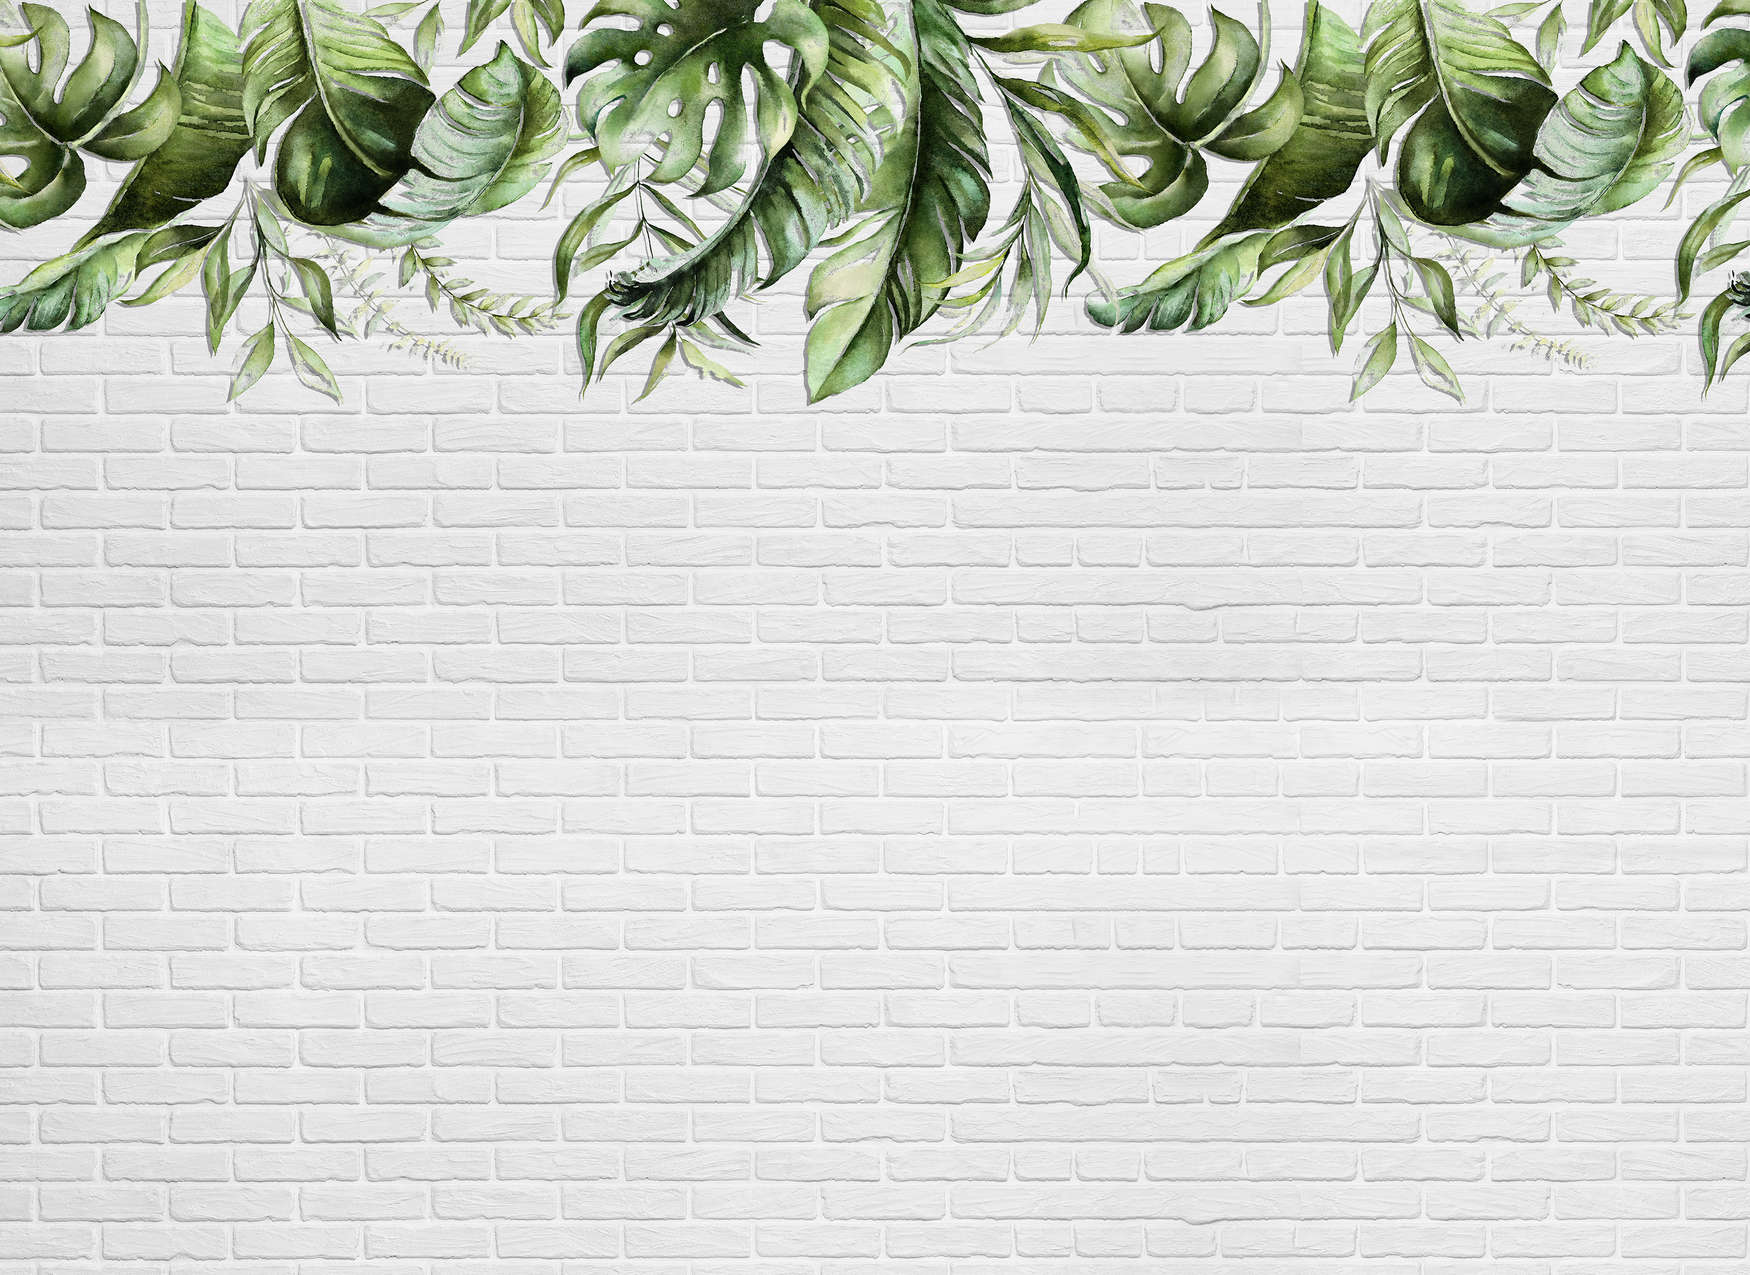             Mural de pared con pequeños zarcillos de hojas en una pared de piedra - Verde, Blanco
        